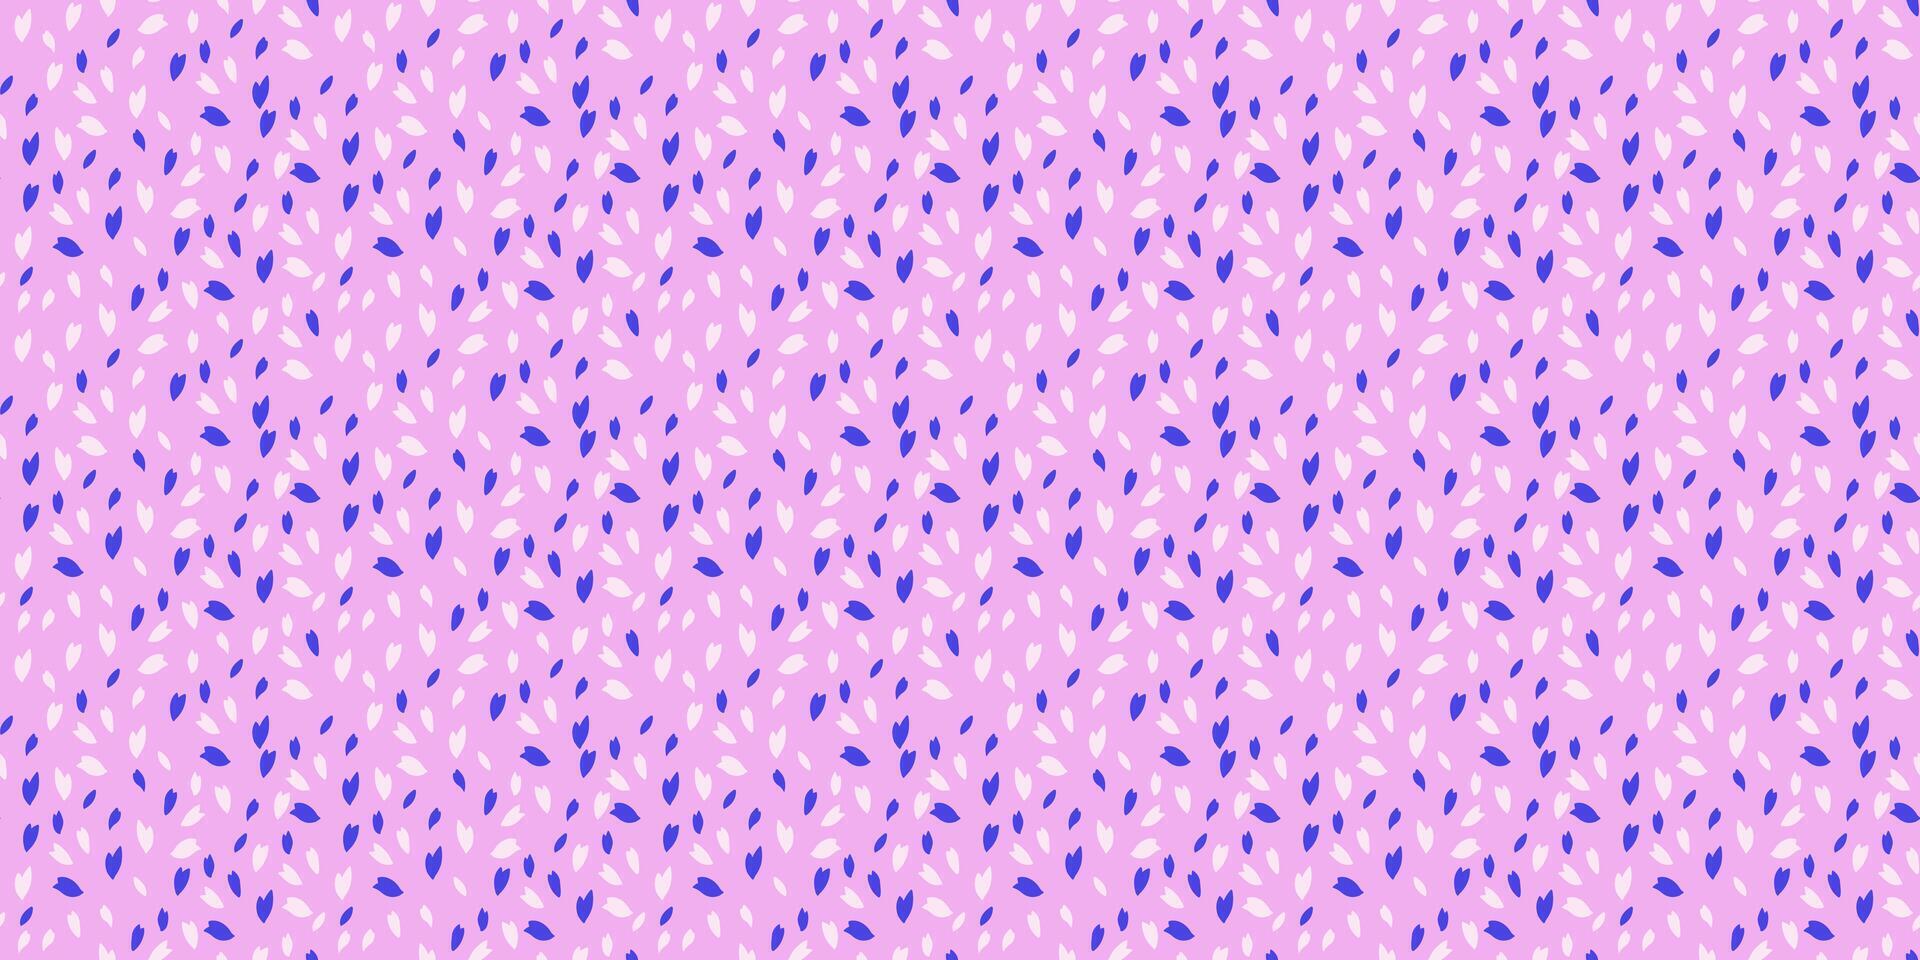 trendig vibrerande polka prickar, droppar, fläckar sömlös mönster. enkel kreativ blå snöflingor, cirklar, broschyrer, slumpmässig punkt, på en rosa bakgrund. vektor hand dragen skiss mycket liten form textur utskrift.